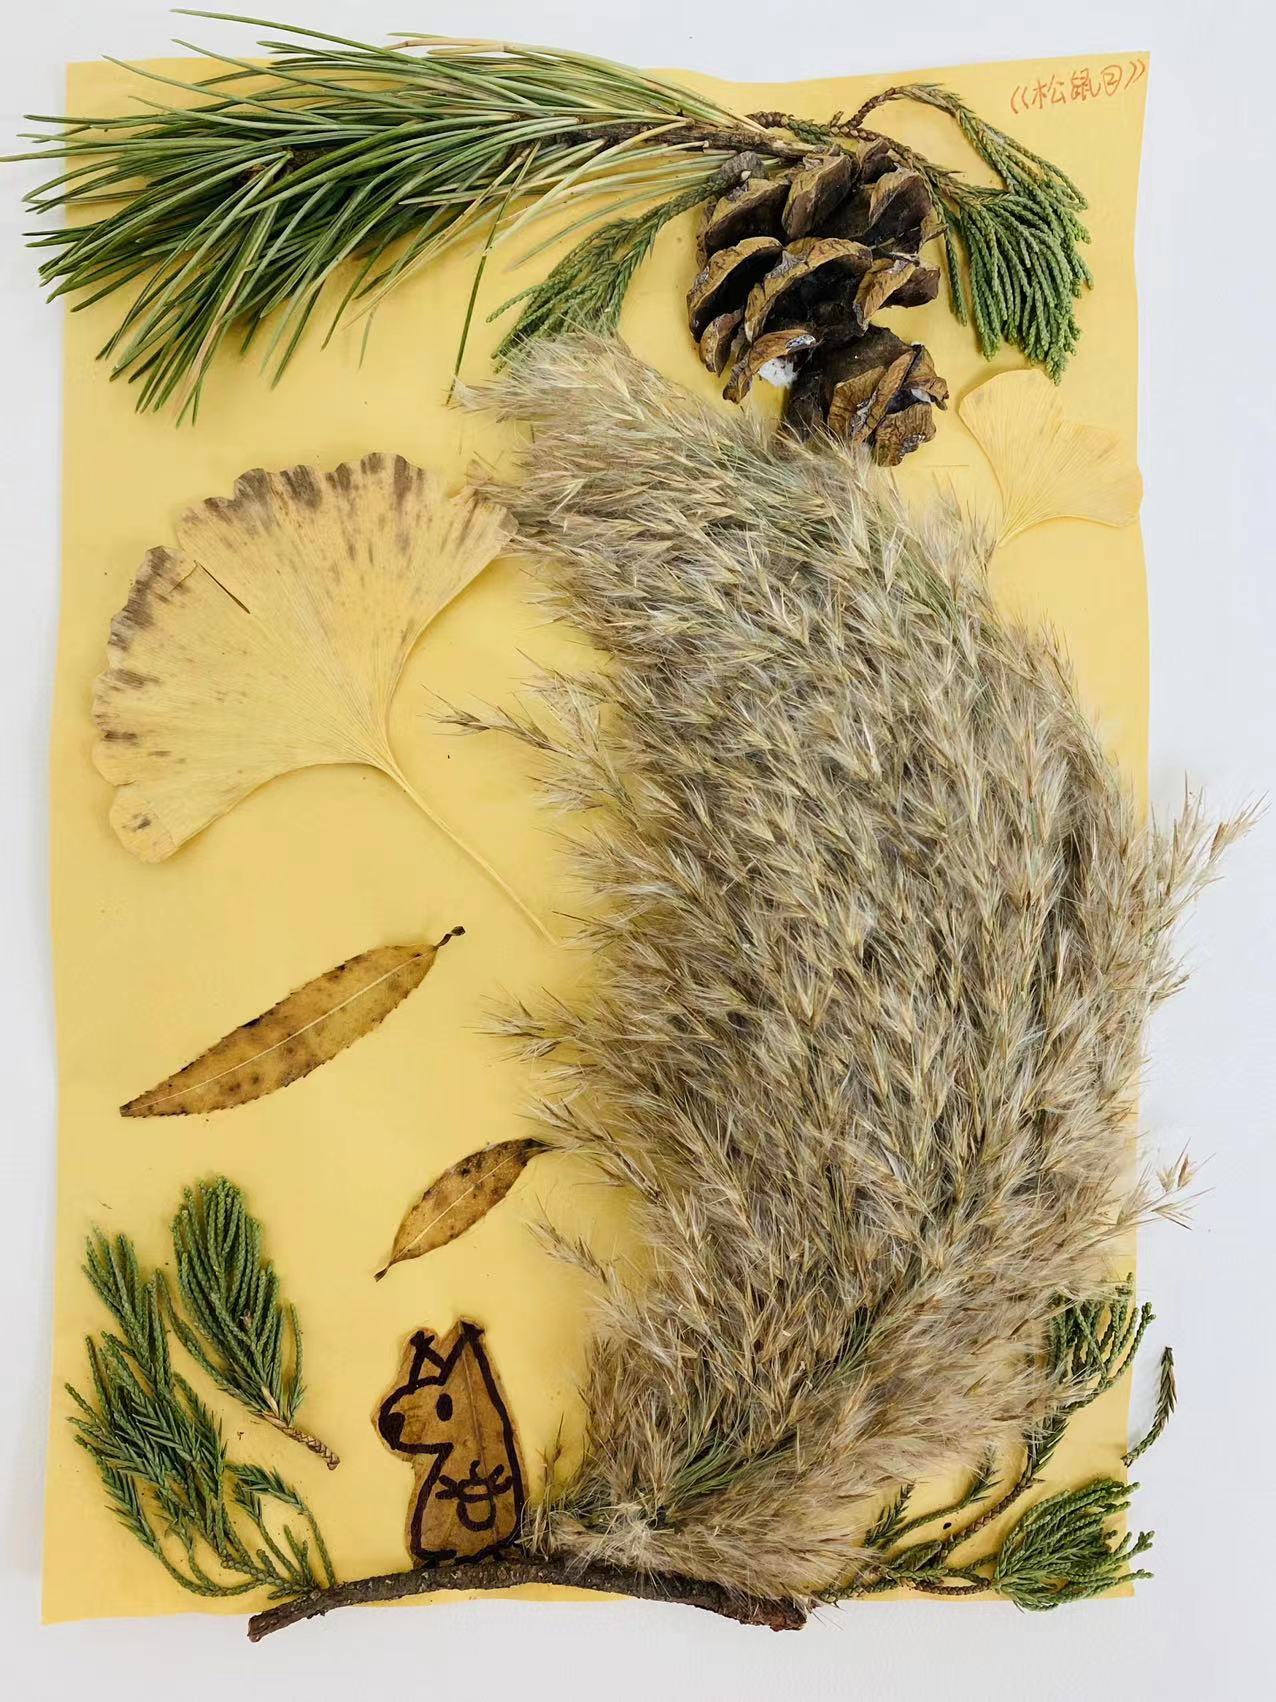 作品：松鼠
作者：徐宏
作品简介：秋日的小精灵——松鼠，在森林中跳跃，带来秋日的欢快与轻松。